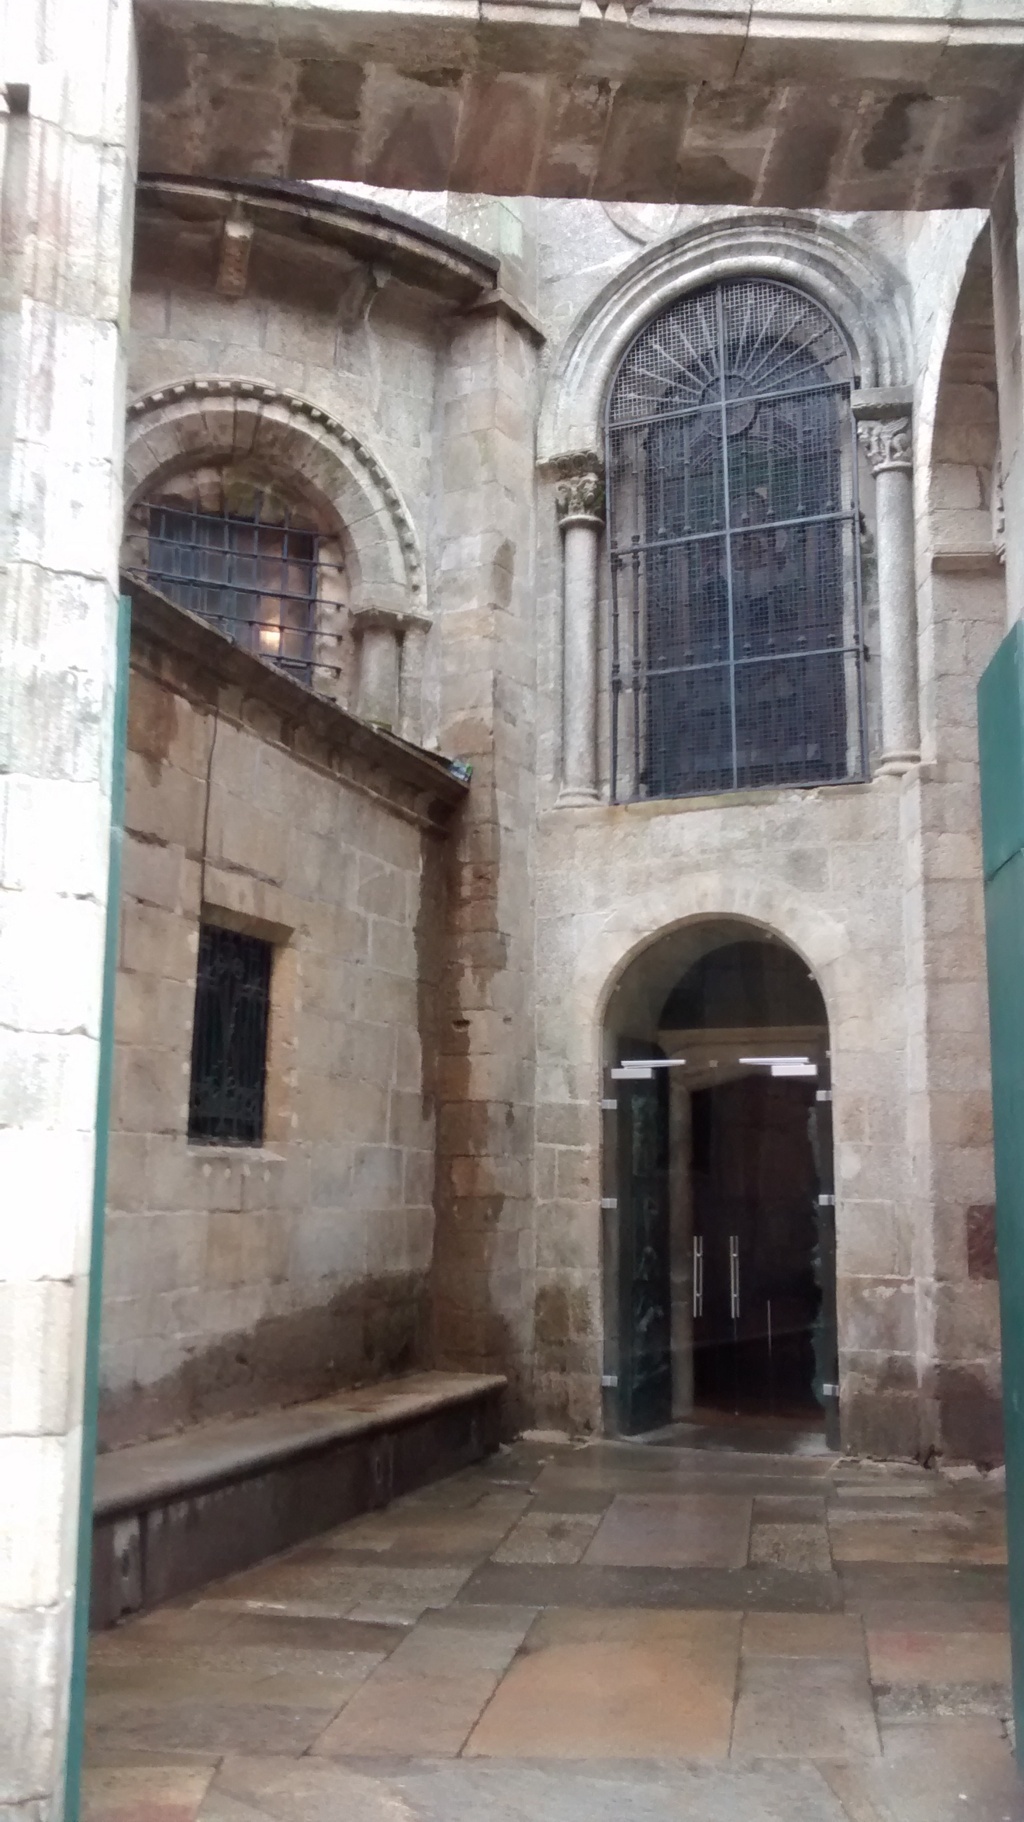 Al interior de la puerta del muro barroco, se encuentra la puerta Santa correspondiente a la catedral románica